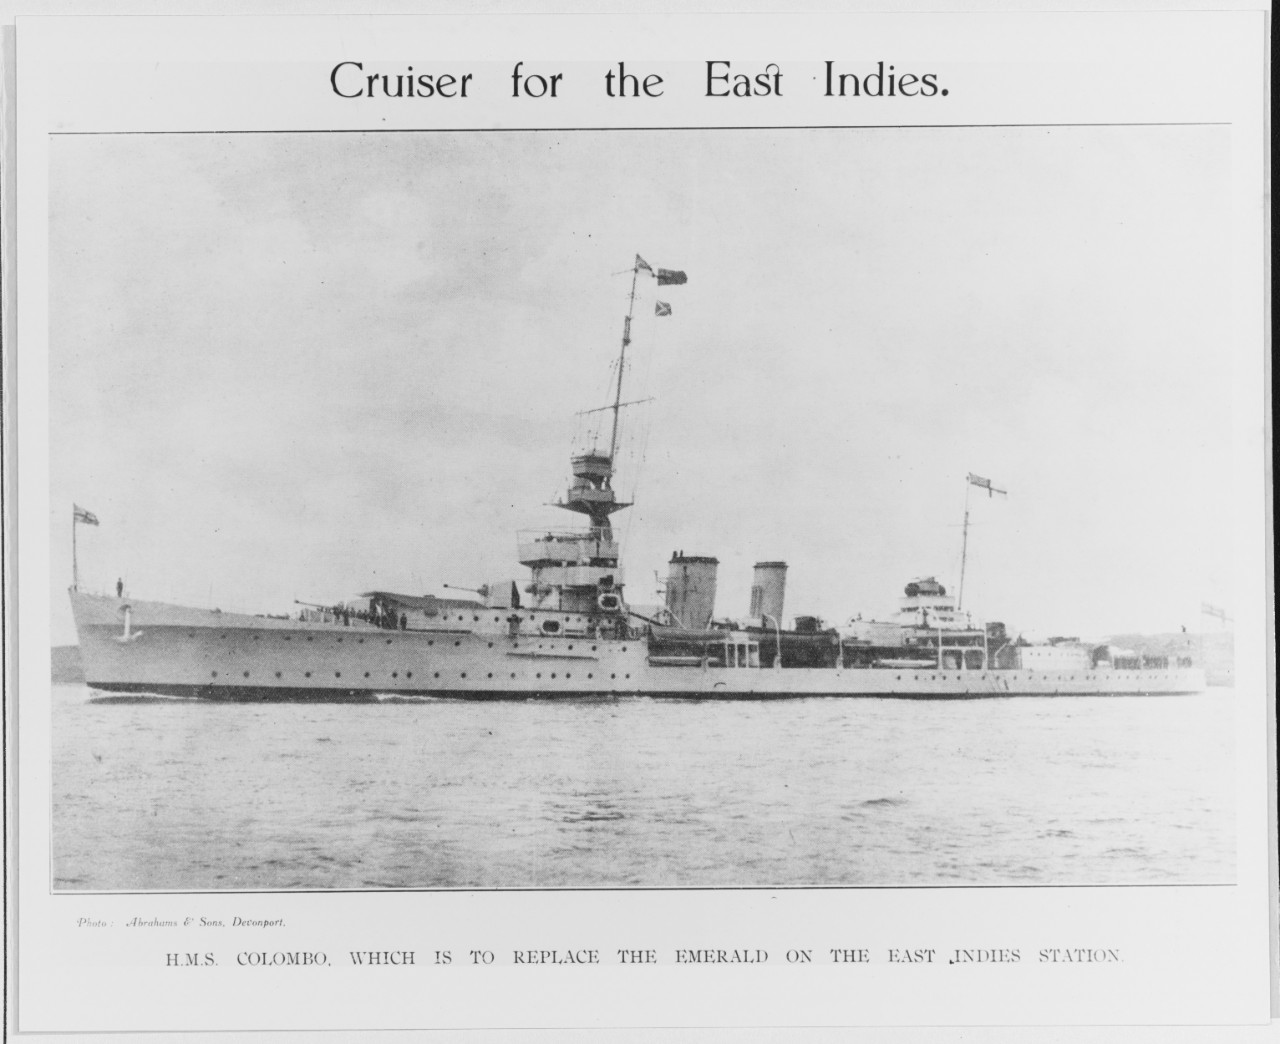 HMS COLOMBO